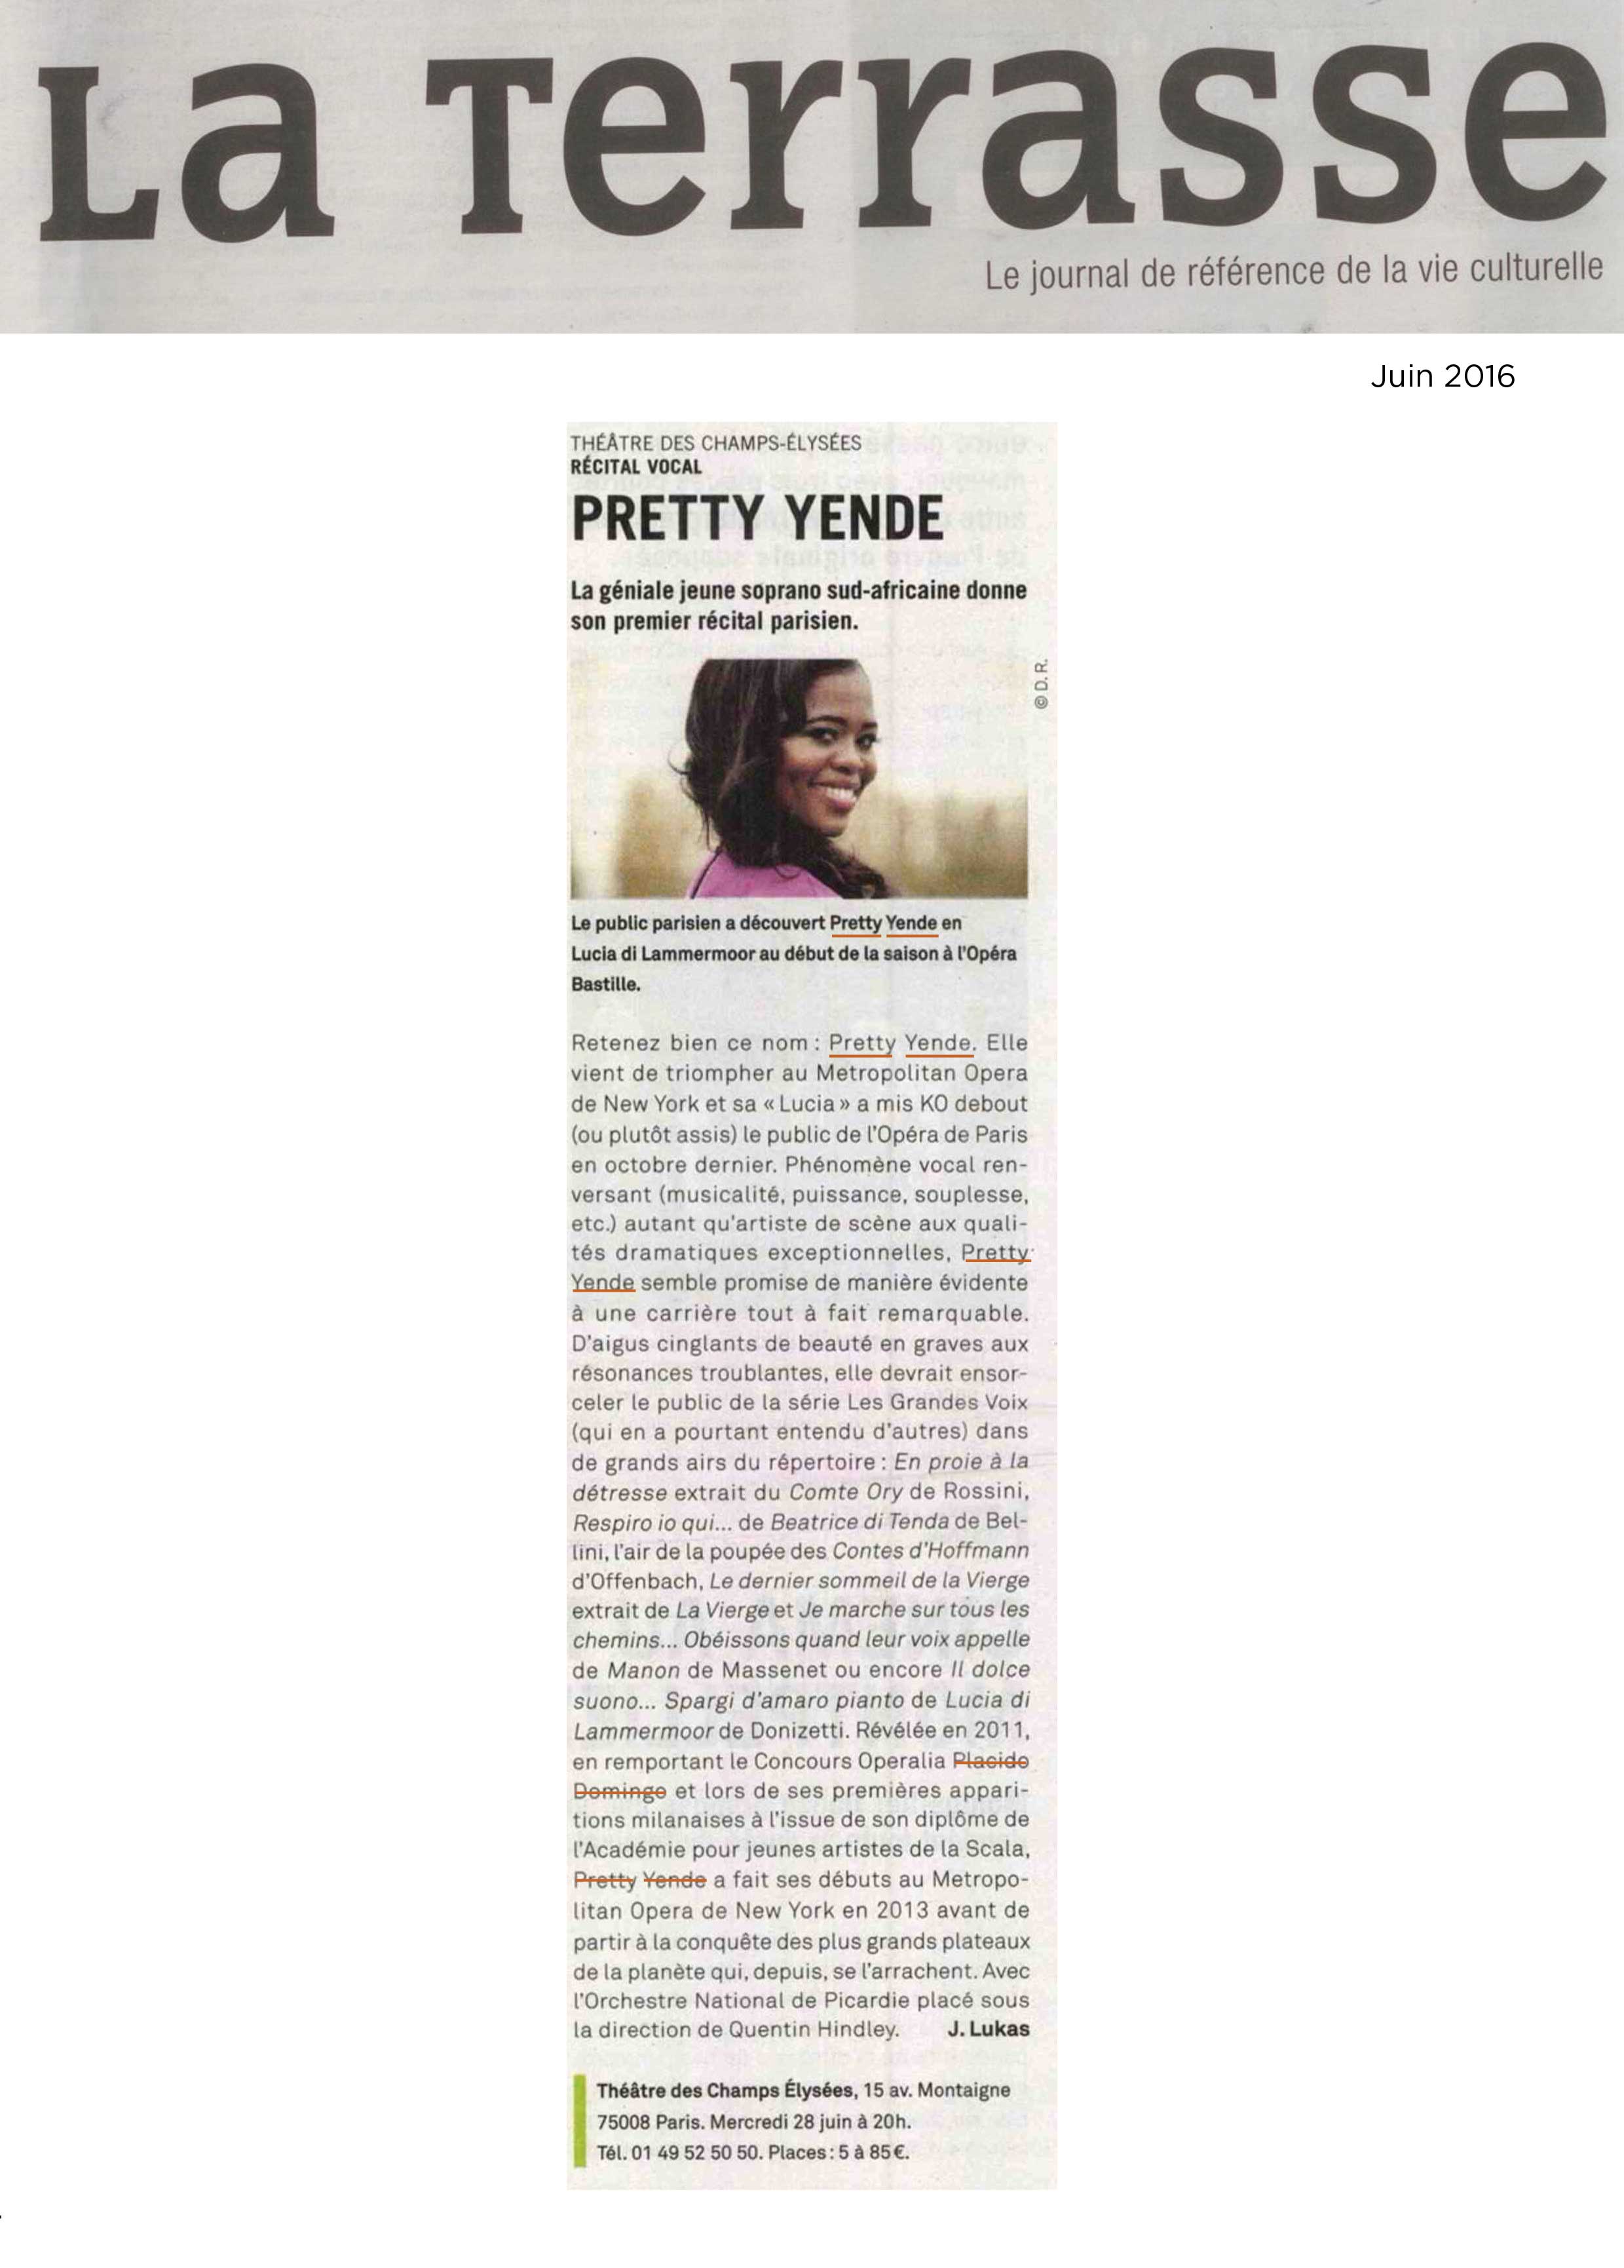 Annonce du récital de Pretty Yende dans le numéro de juin de La Terrasse